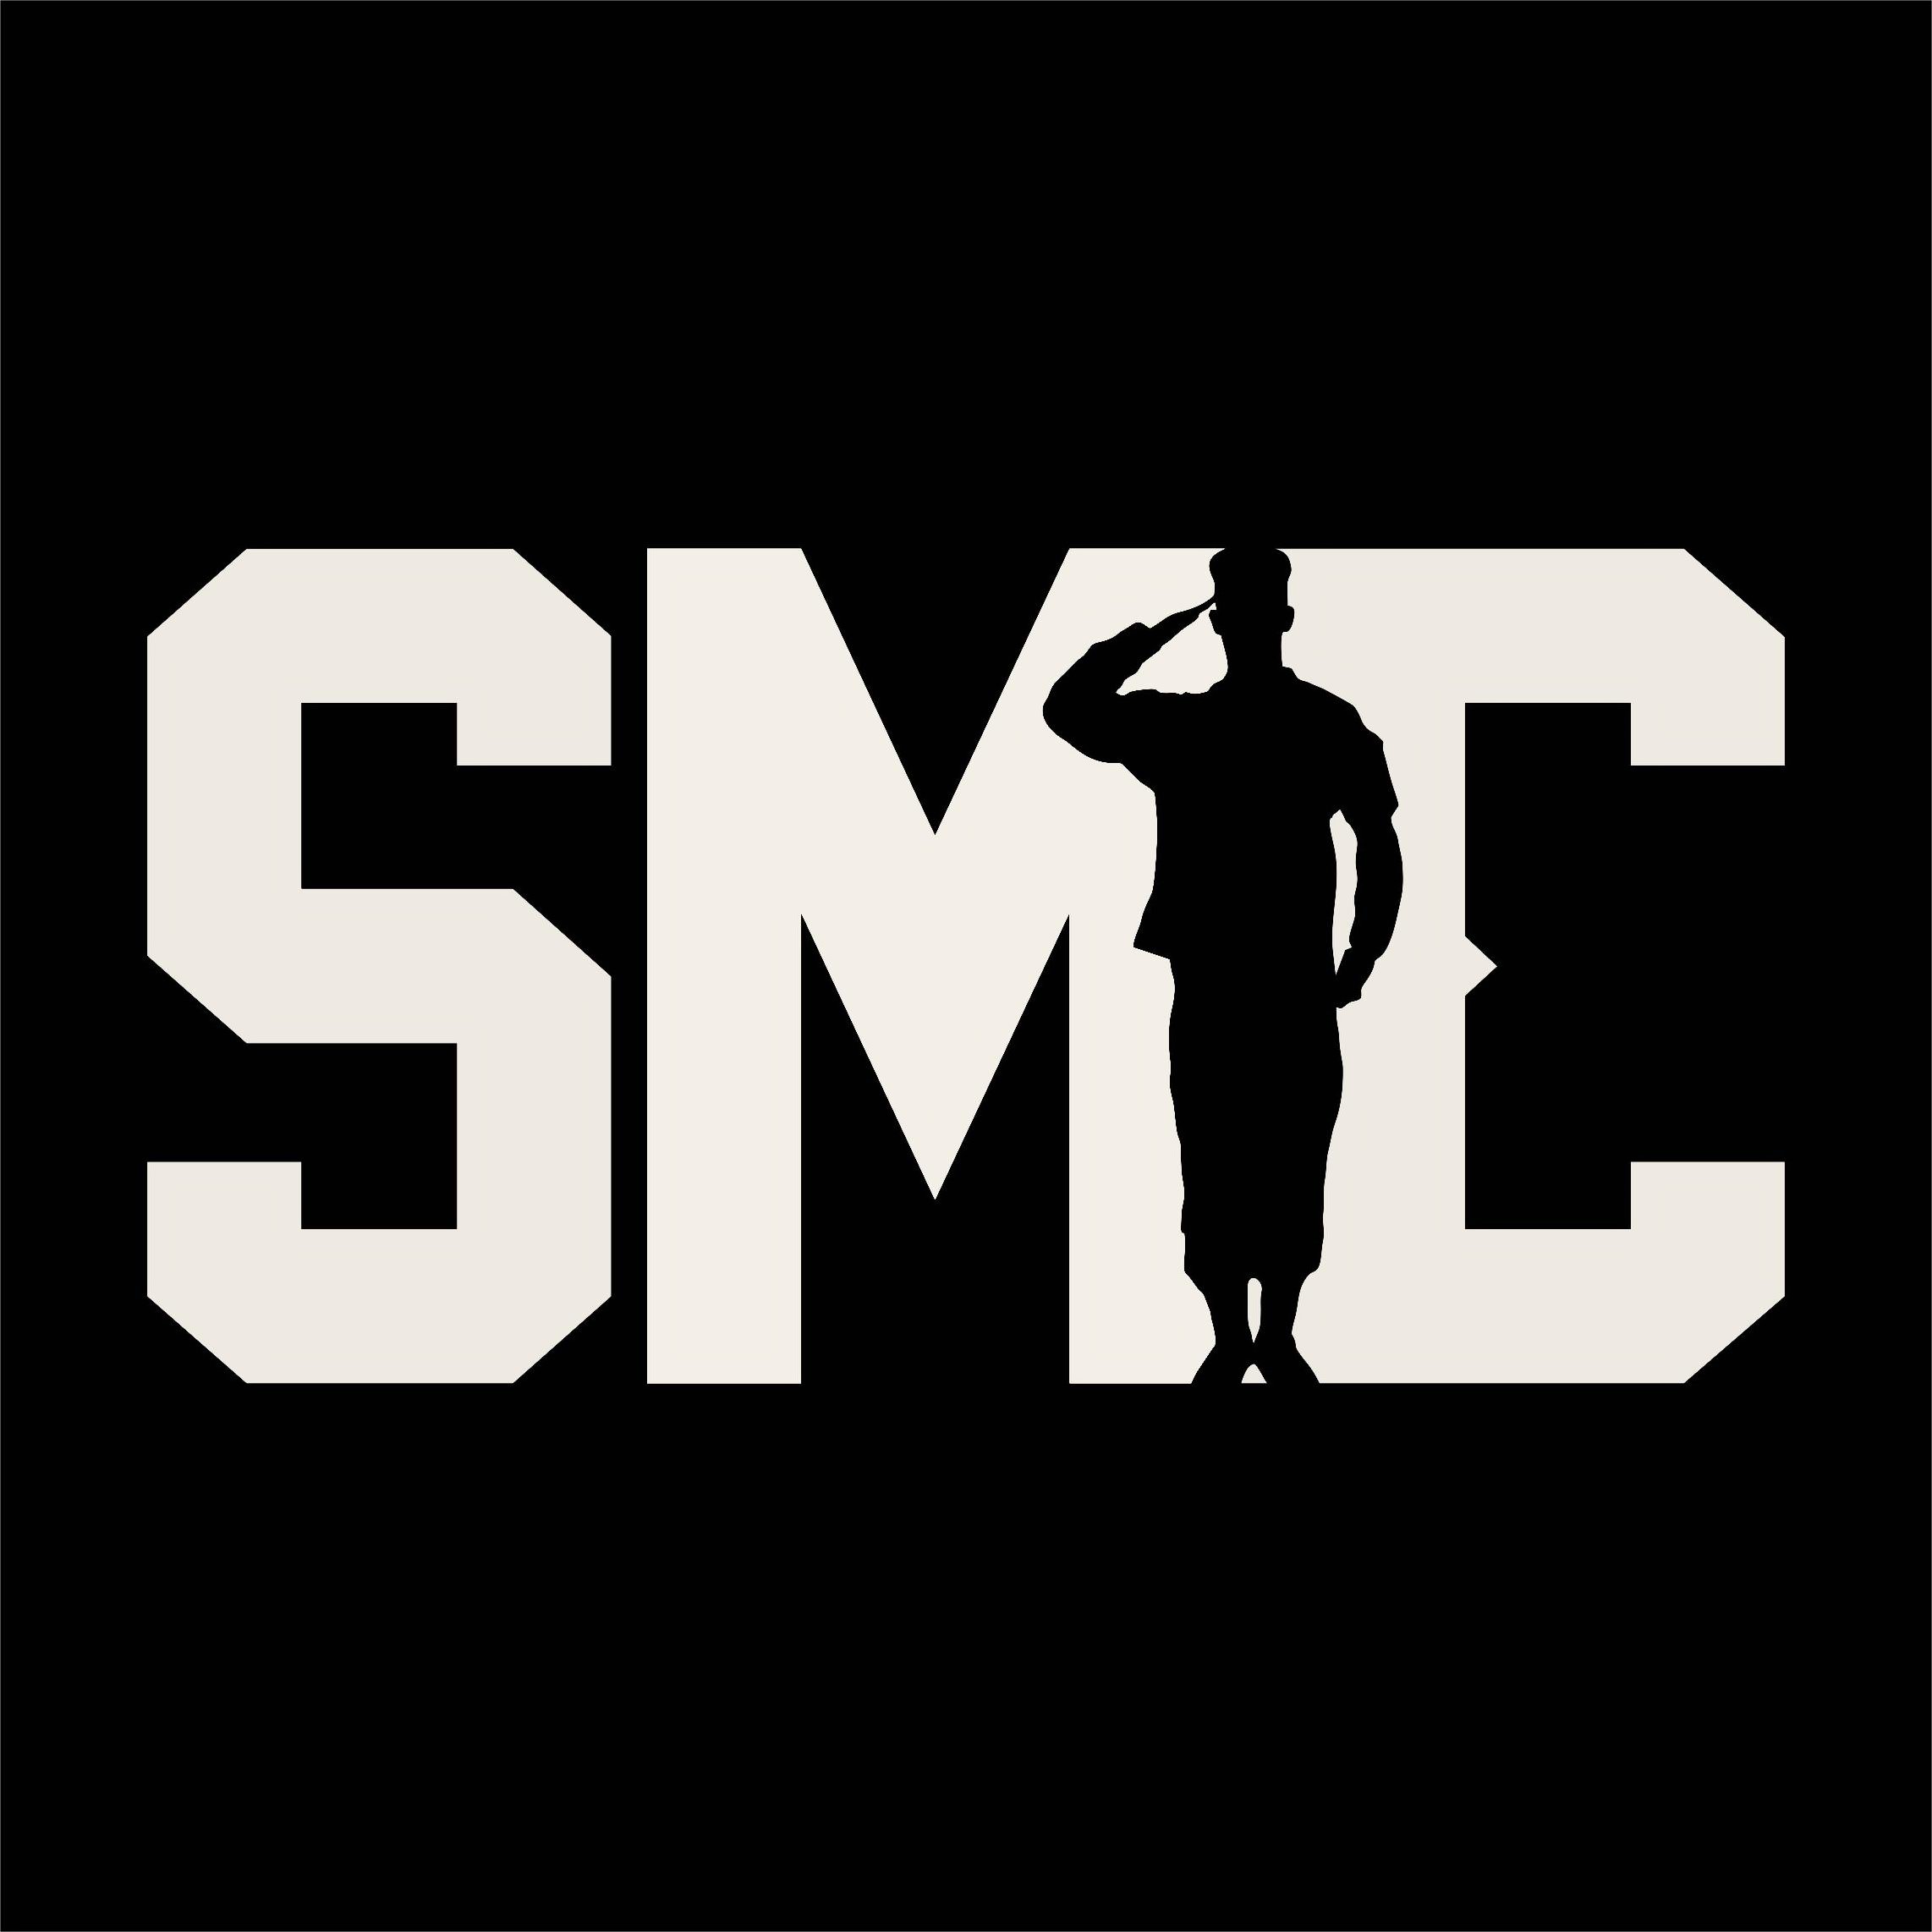 Trademark Logo SMC